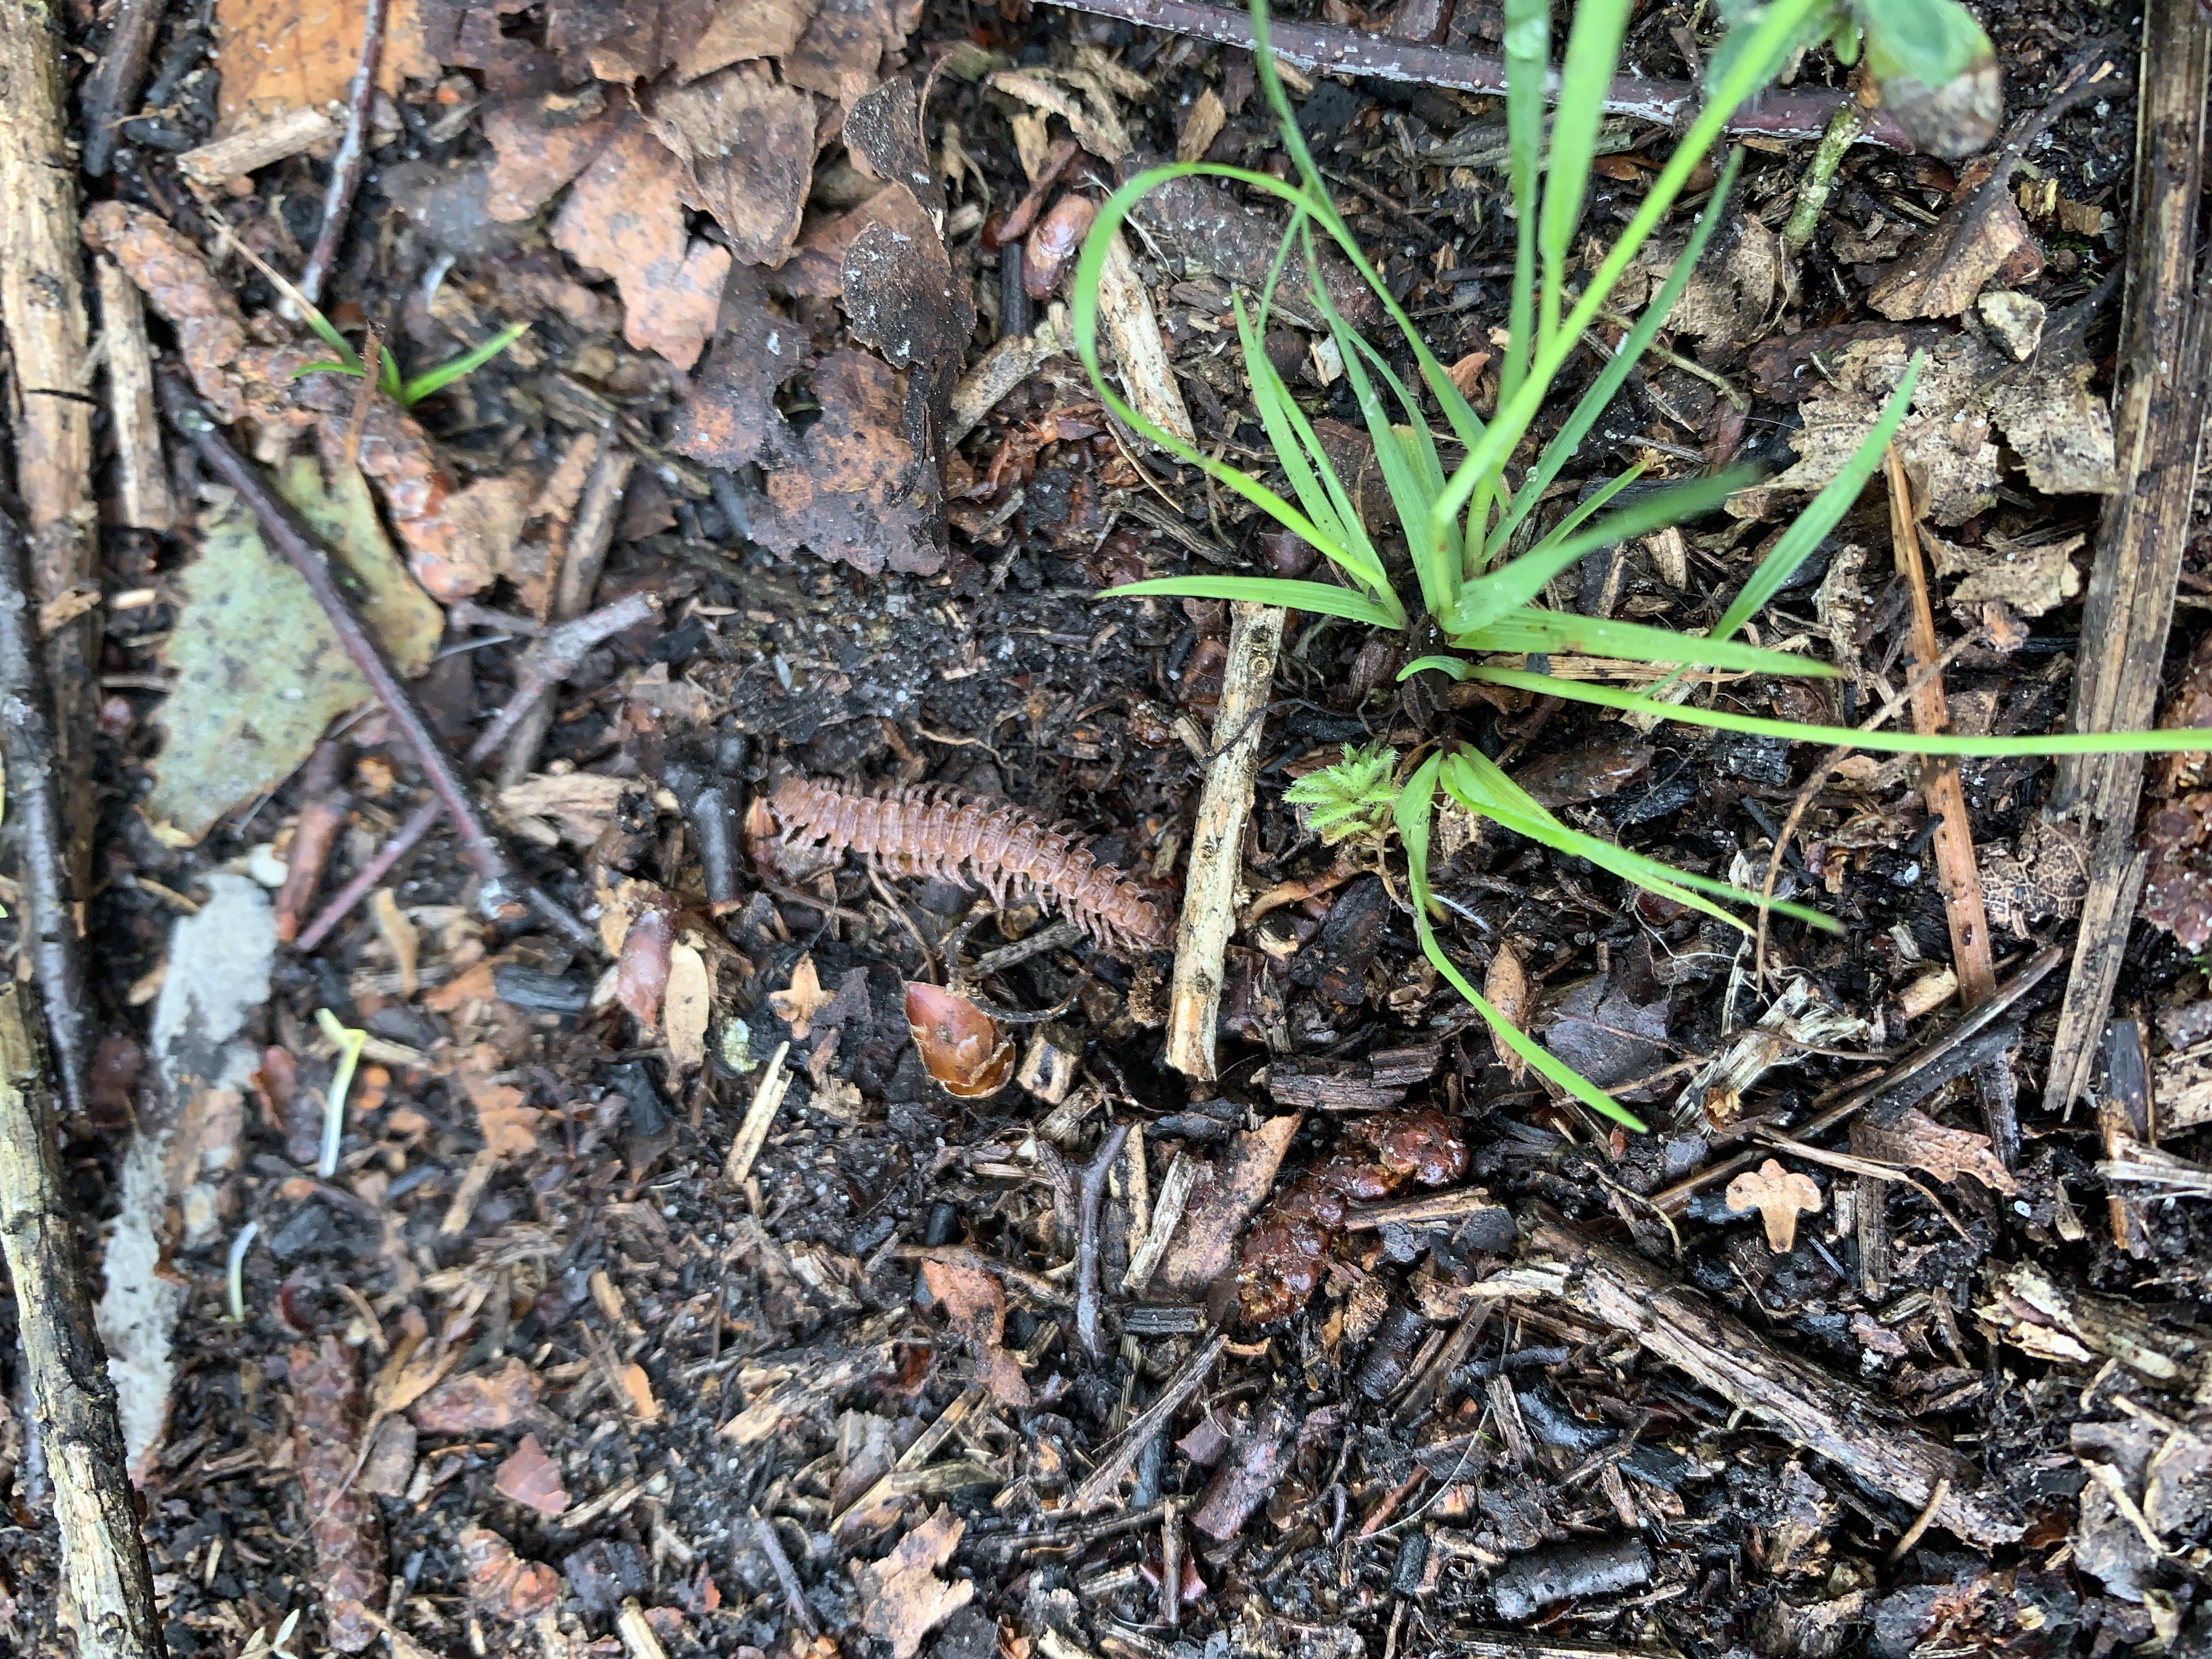 Centipede under log